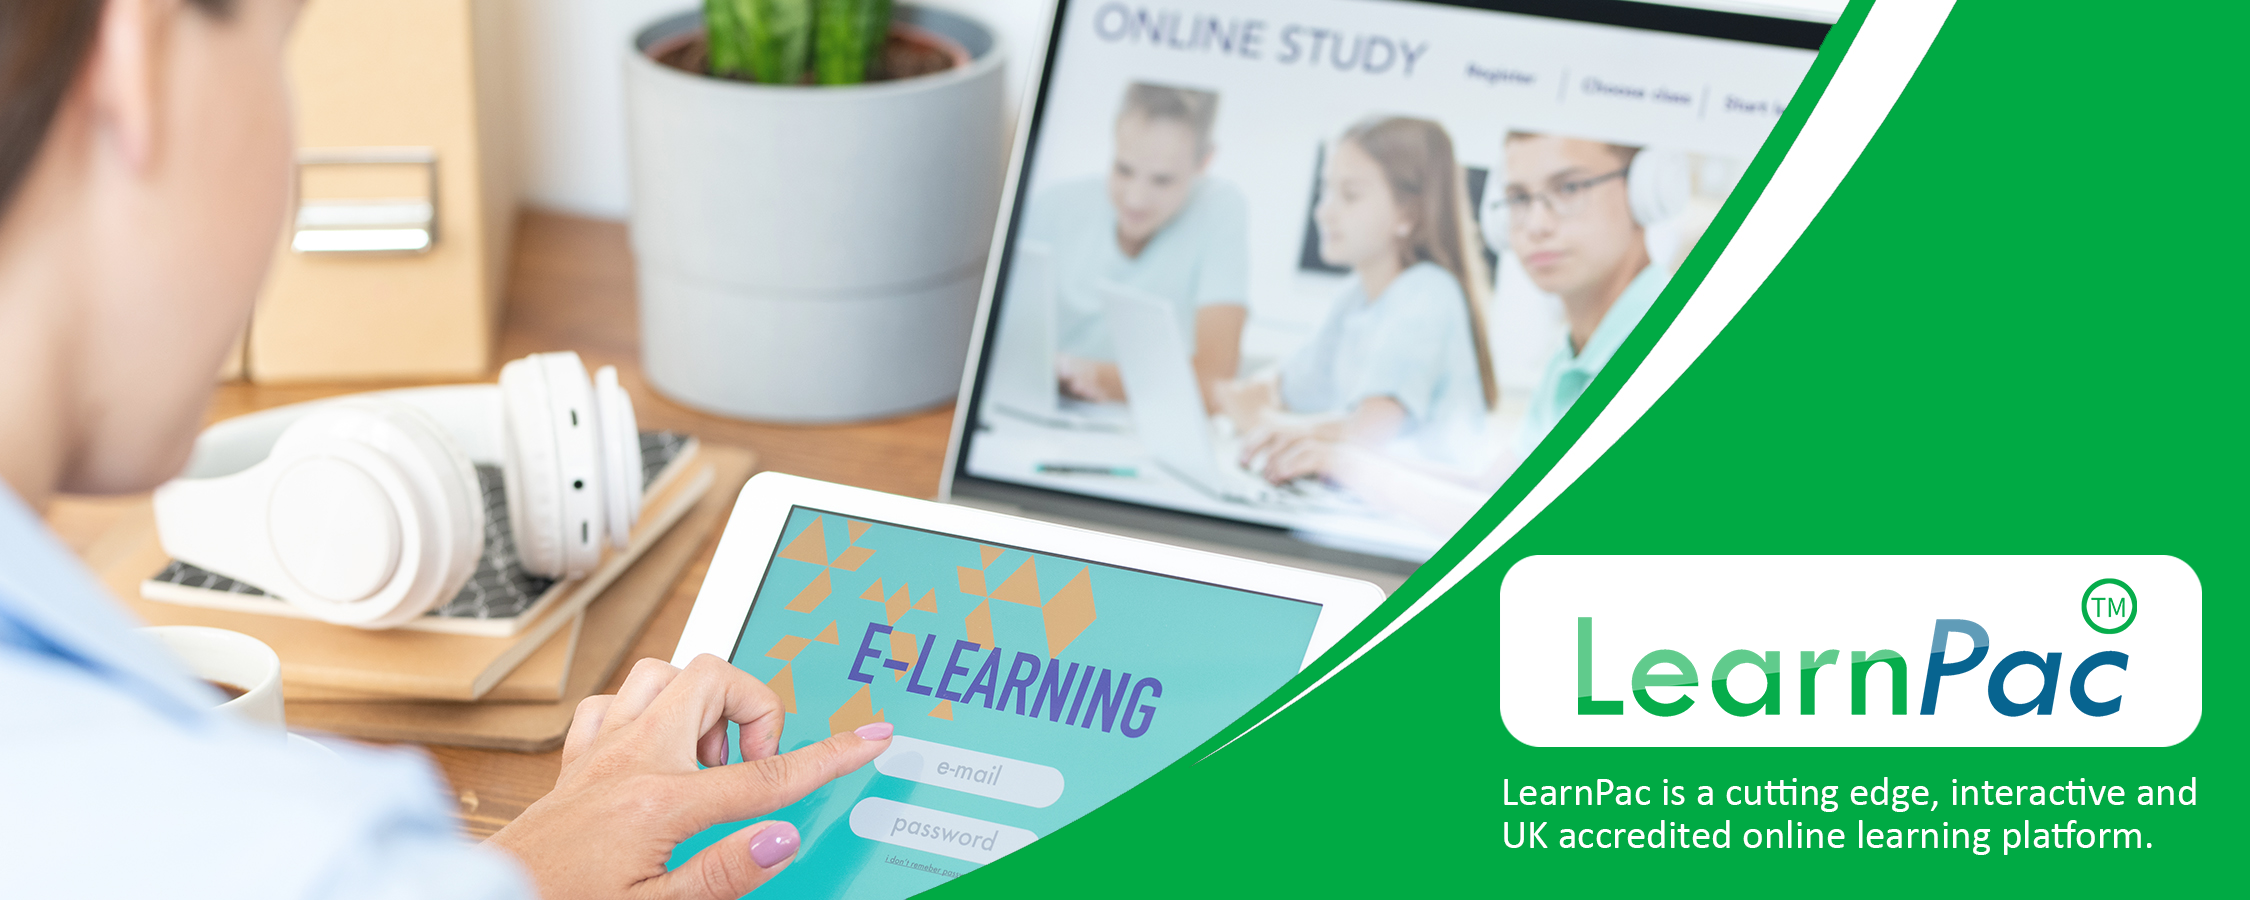 Employee Onboarding Training - Online Learning Courses - E-Learning Courses - LearnPac Systems UK -